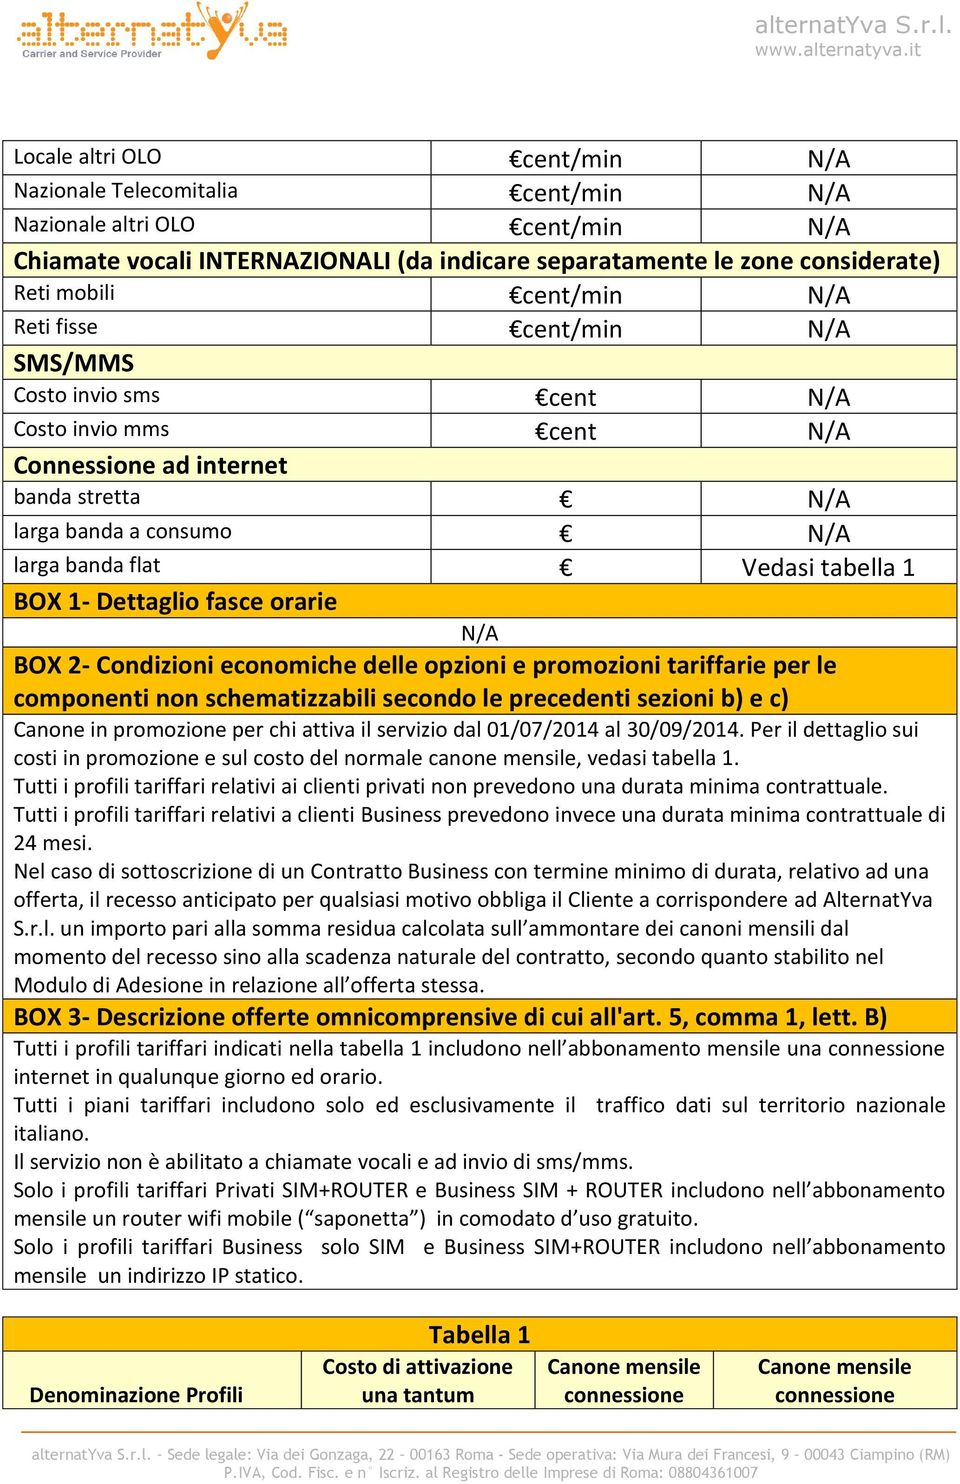 promozioni tariffarie per le componenti n schematizzabili secondo le precedenti sezioni b) e c) Cane in promozione per chi attiva il servizio dal 01/07/2014 al 30/09/2014.